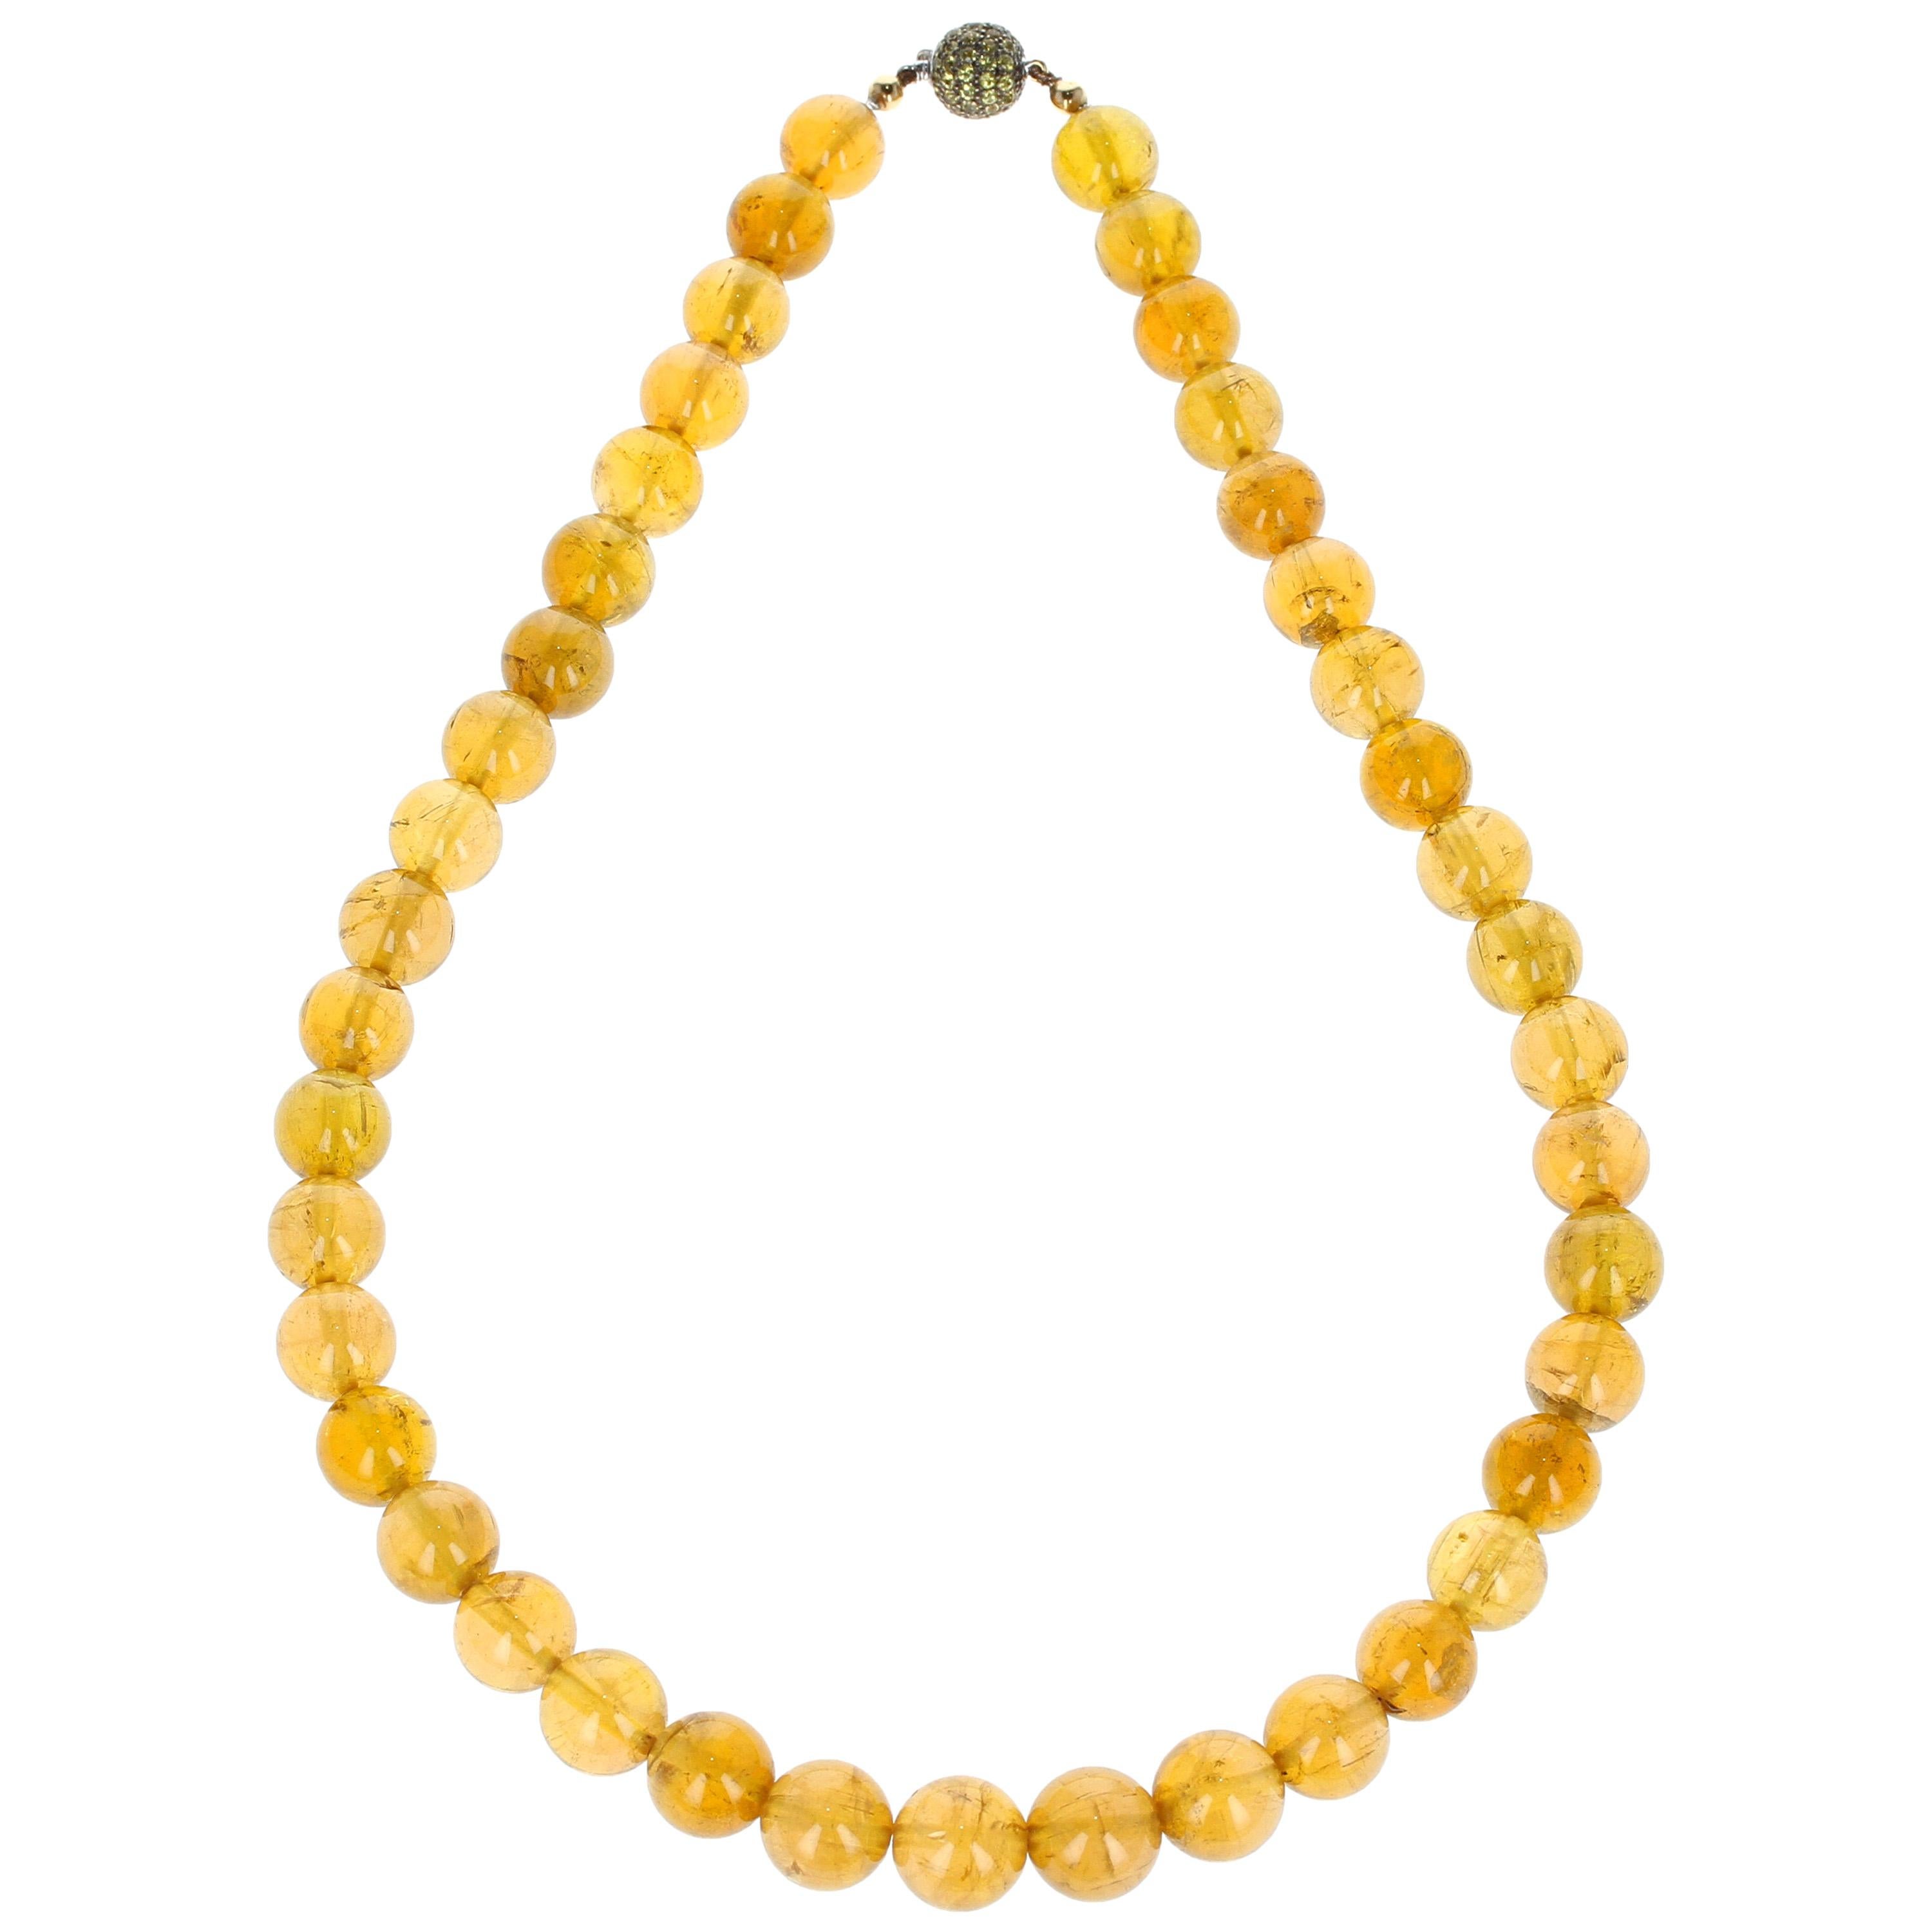 Collier en or avec perles de tourmaline jaune et saphirs